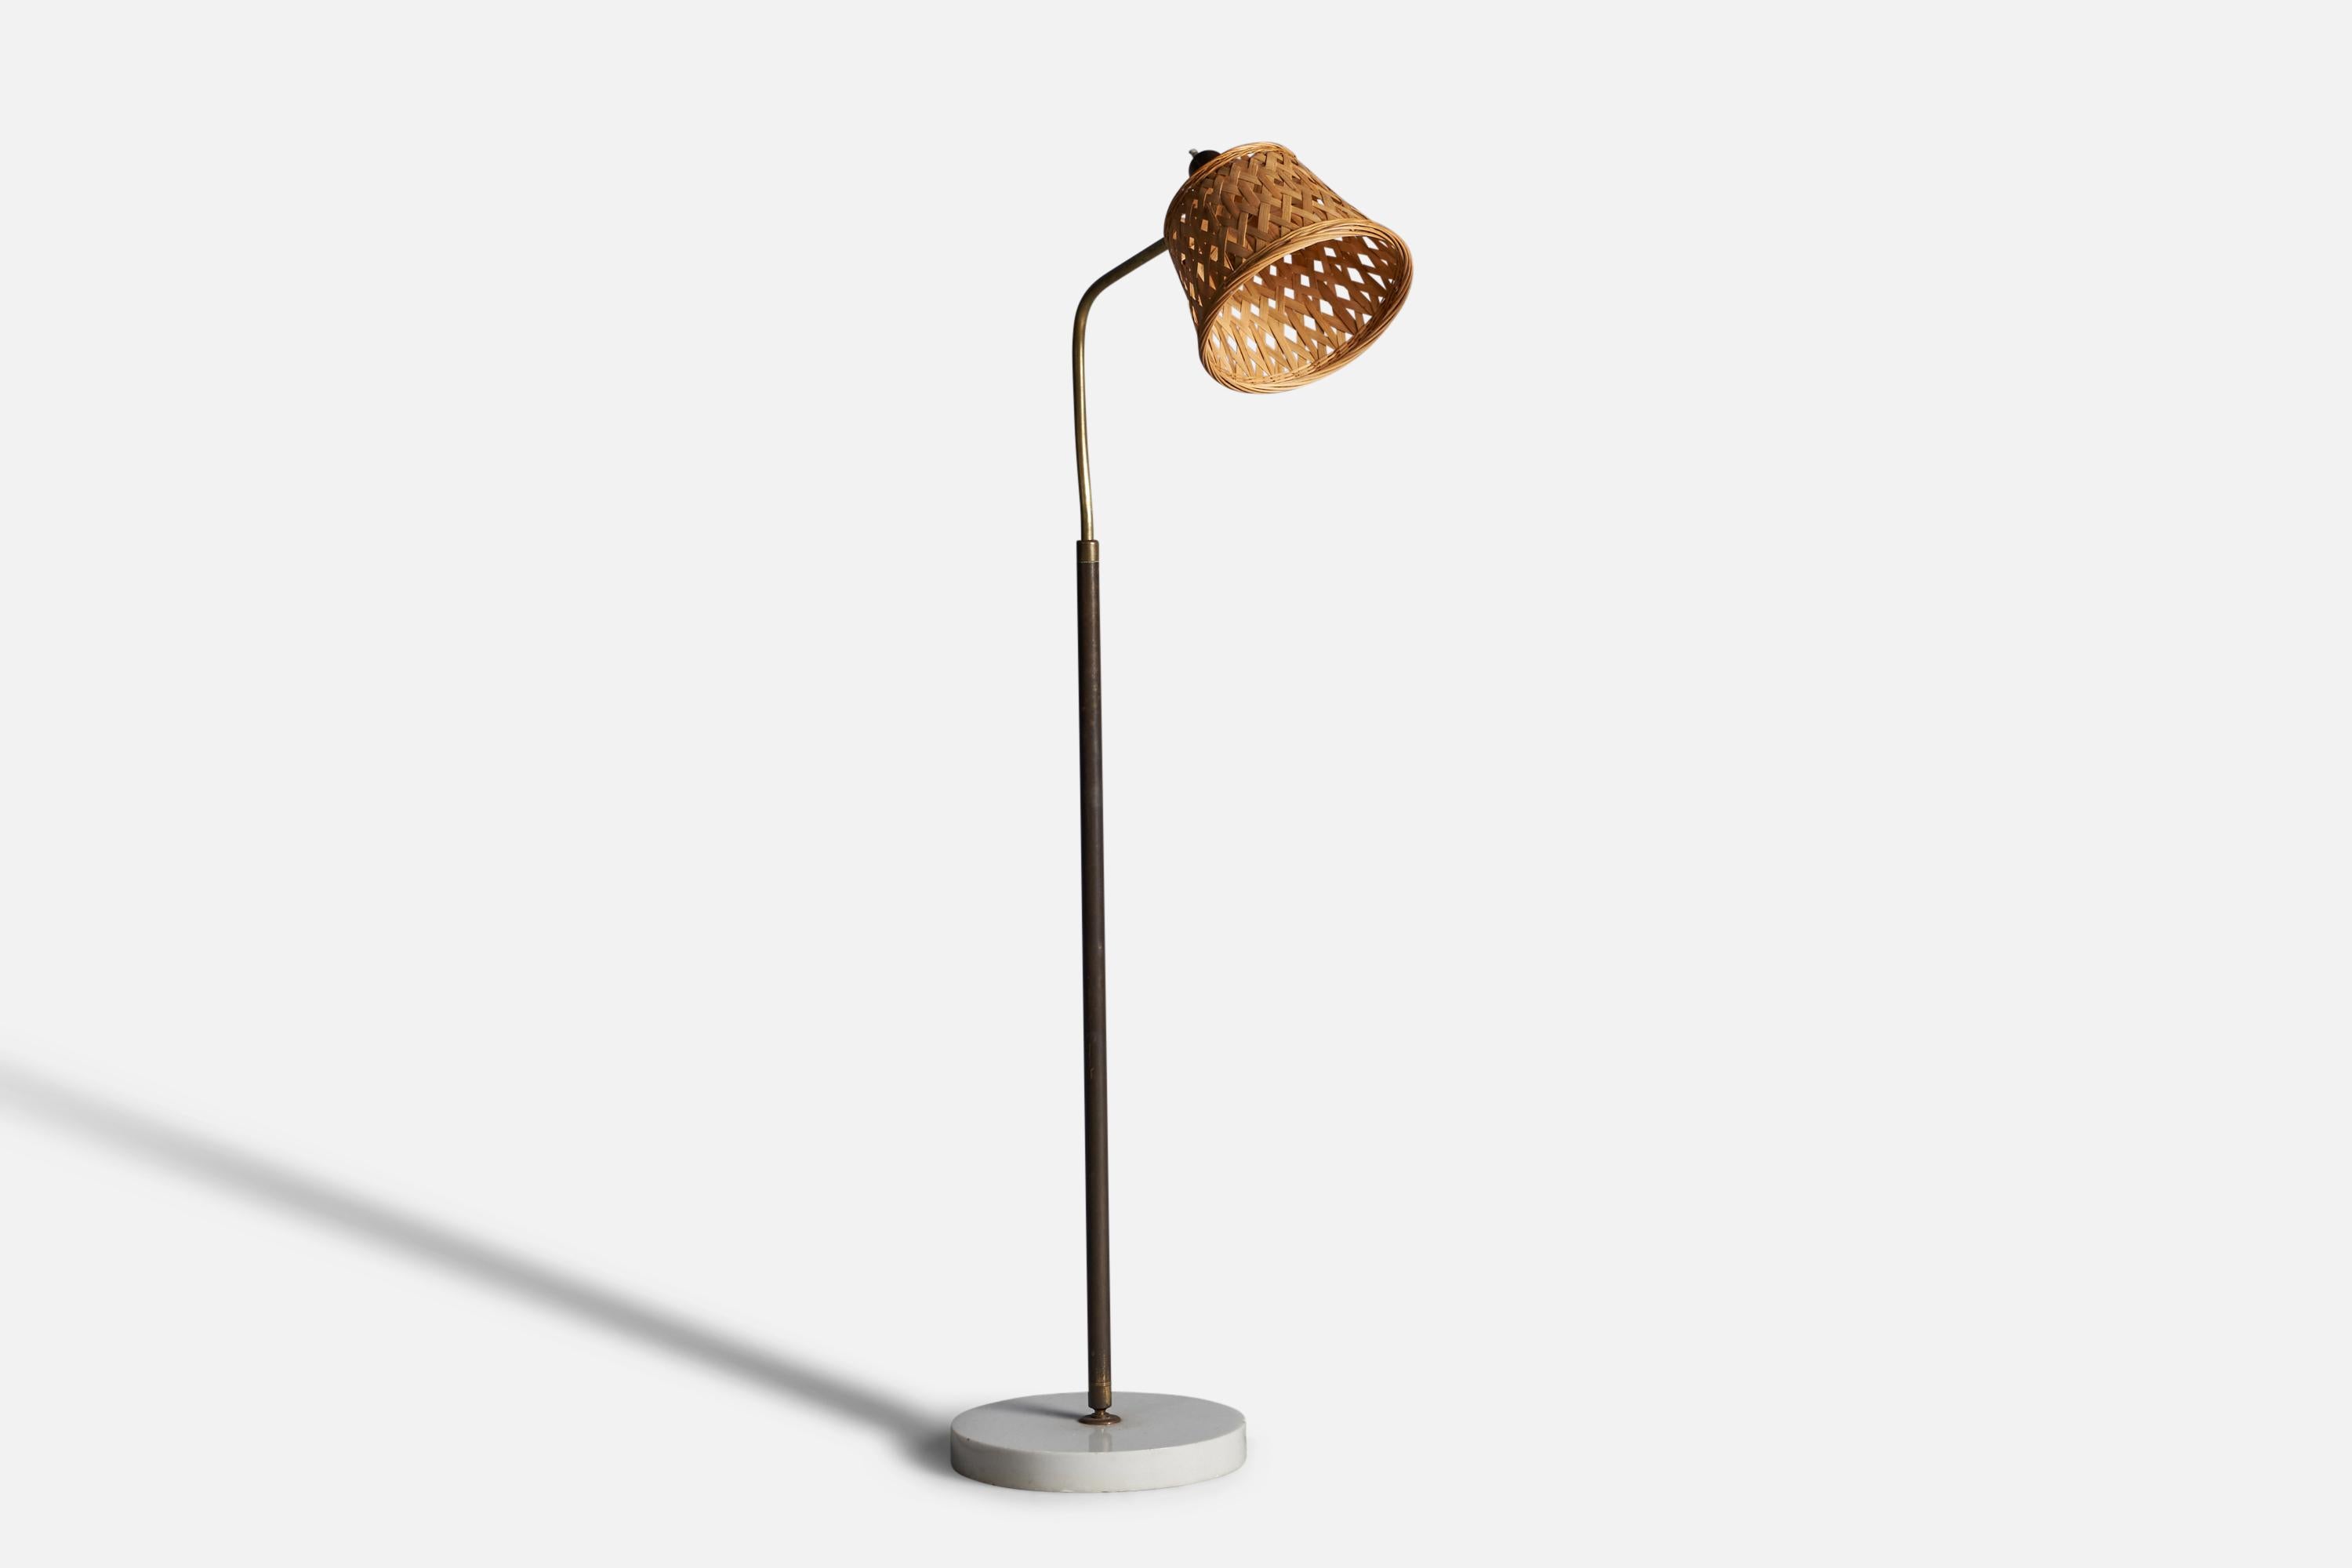 Eine verstellbare Stehlampe aus Messing, Marmor und Rattan, entworfen von Giuseppe Ostuni, hergestellt von O-Luce, Italien, 1950er Jahre.

Gesamtabmessungen: 51